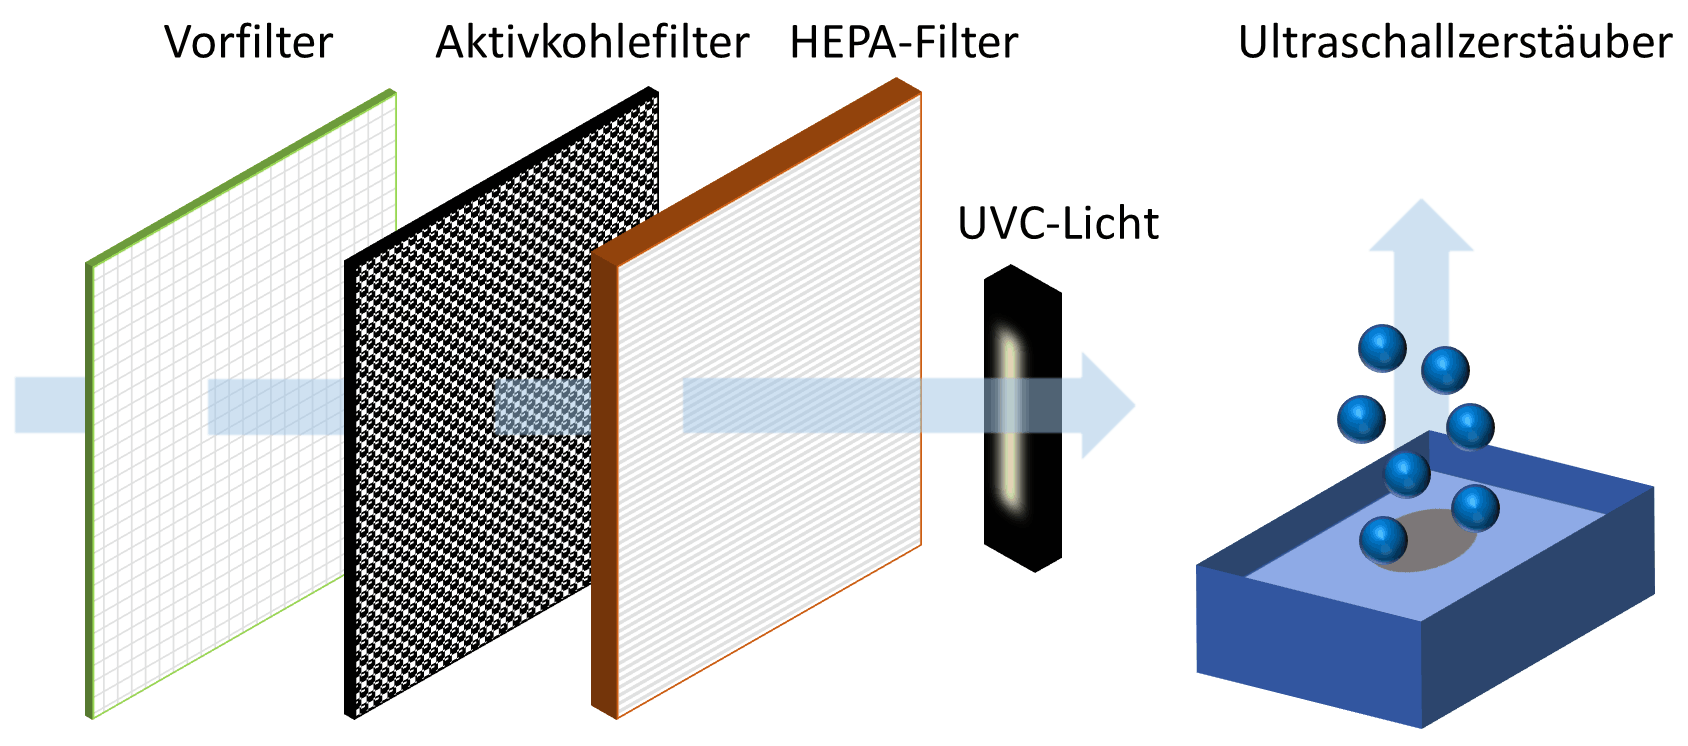 Luftstrom durch Vorfilter, Aktivkohlefilter, HEPA-Filter und UVC-Licht. Befeuchtung mittels Ultraschallzerstäuber